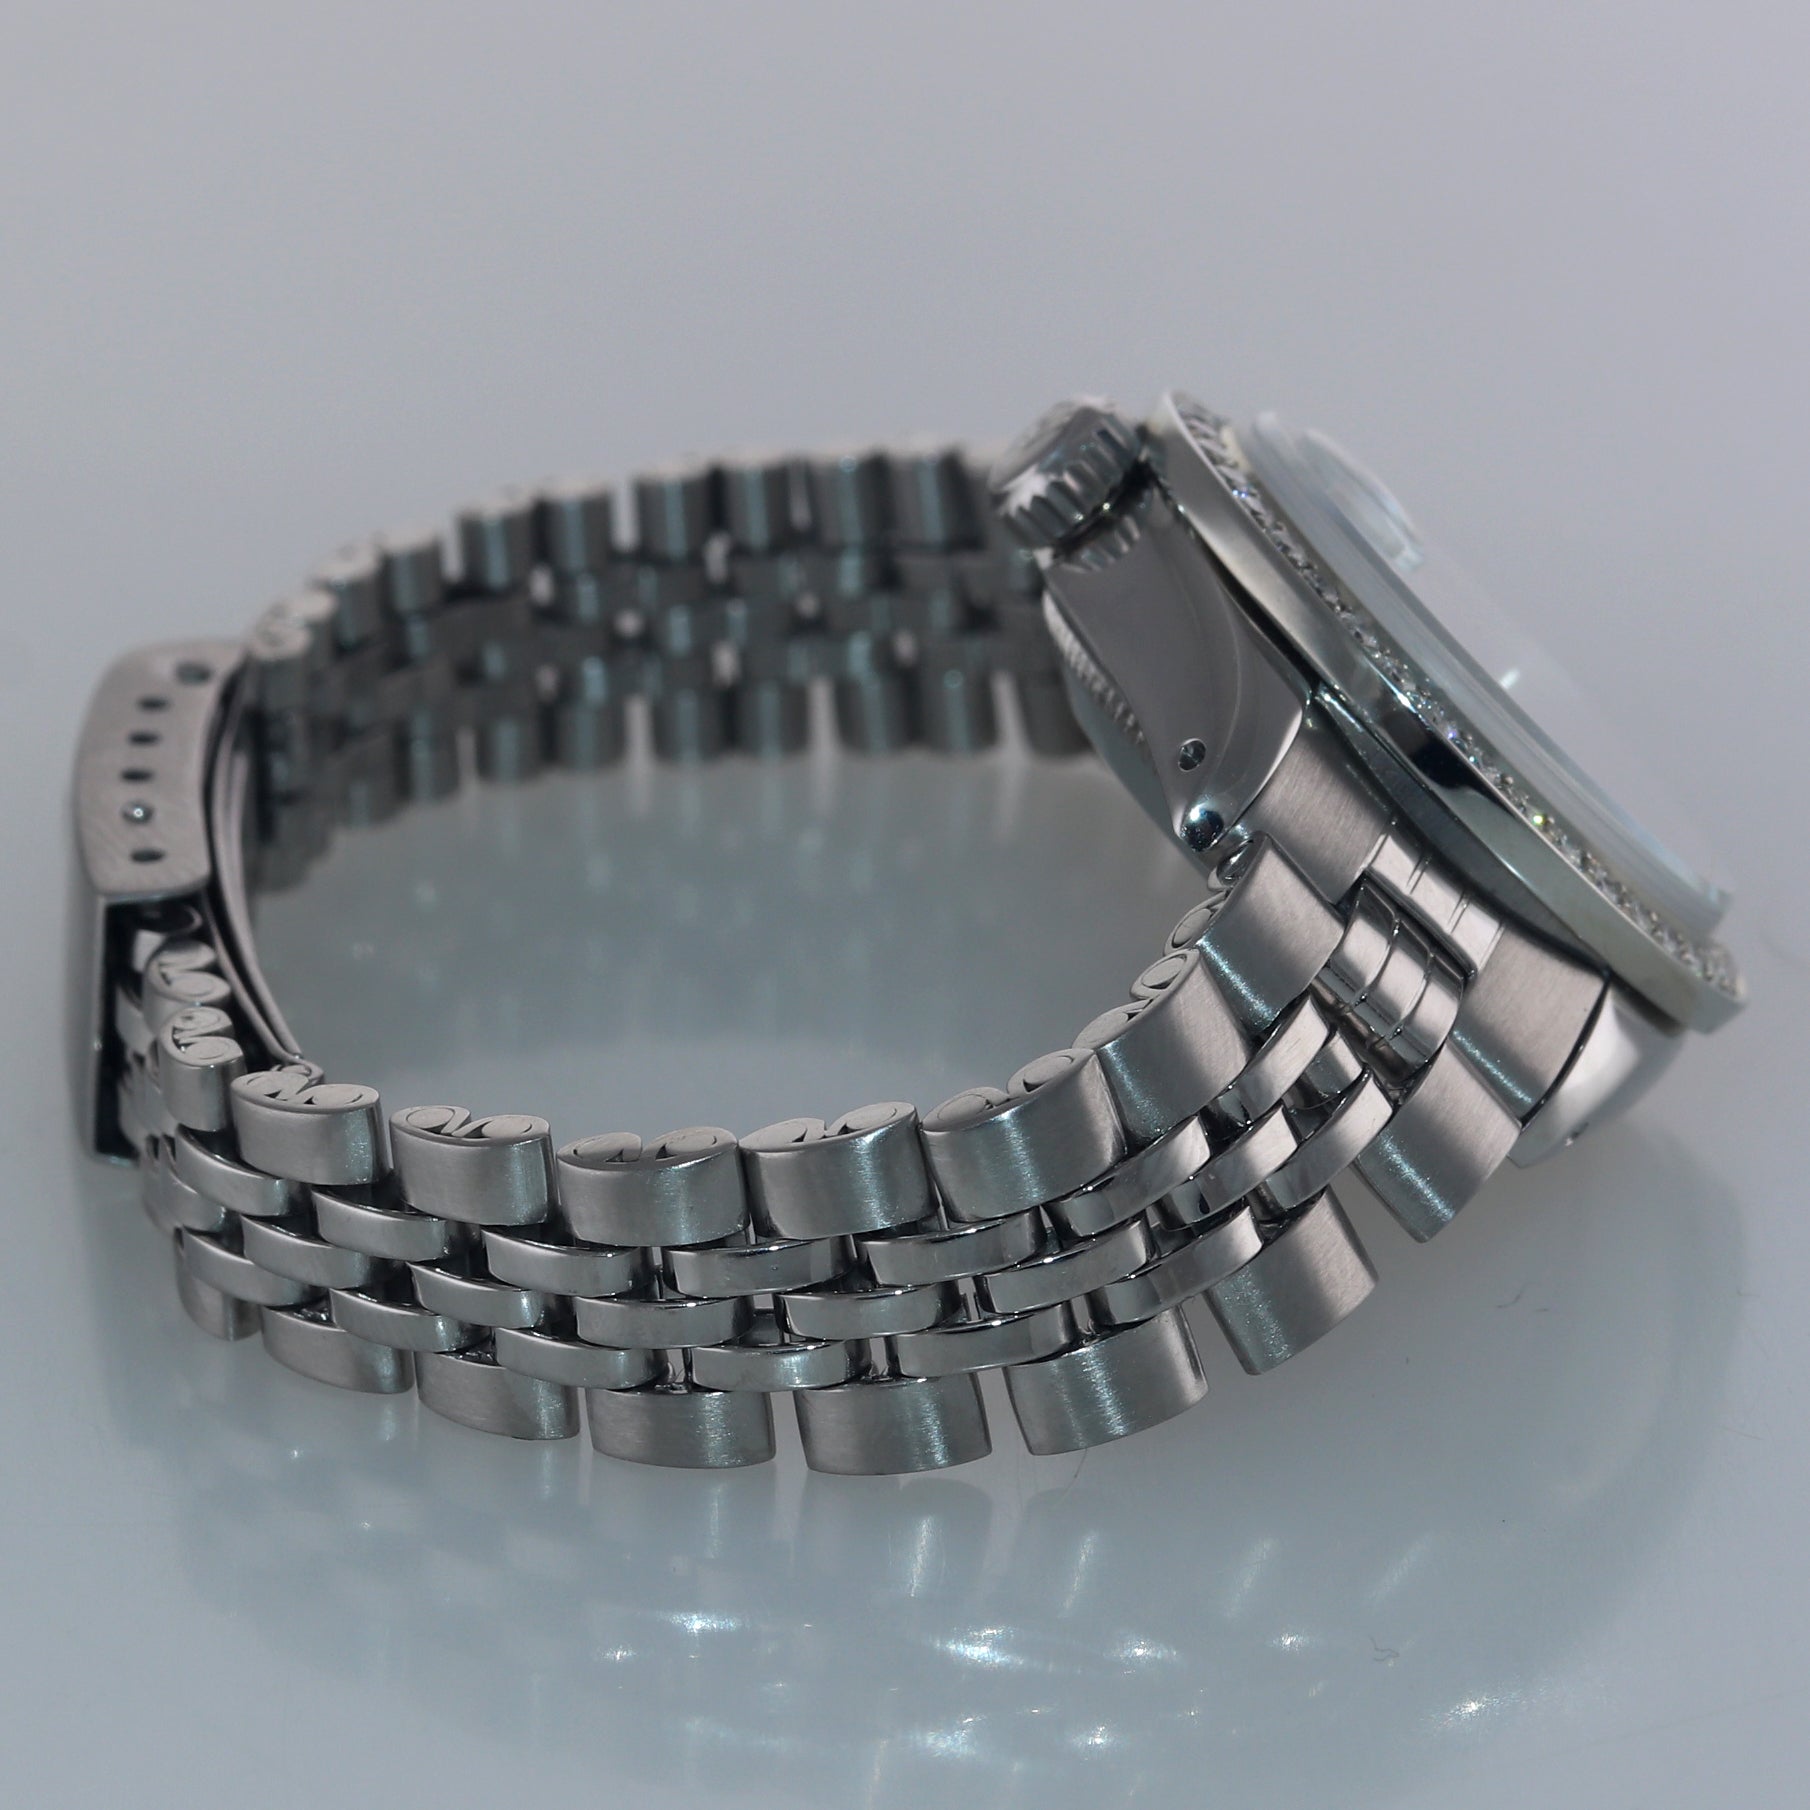 Diamond Ladies Rolex DateJust 26mm 6917 Steel Jubilee Diamond Bezel Dial Watch